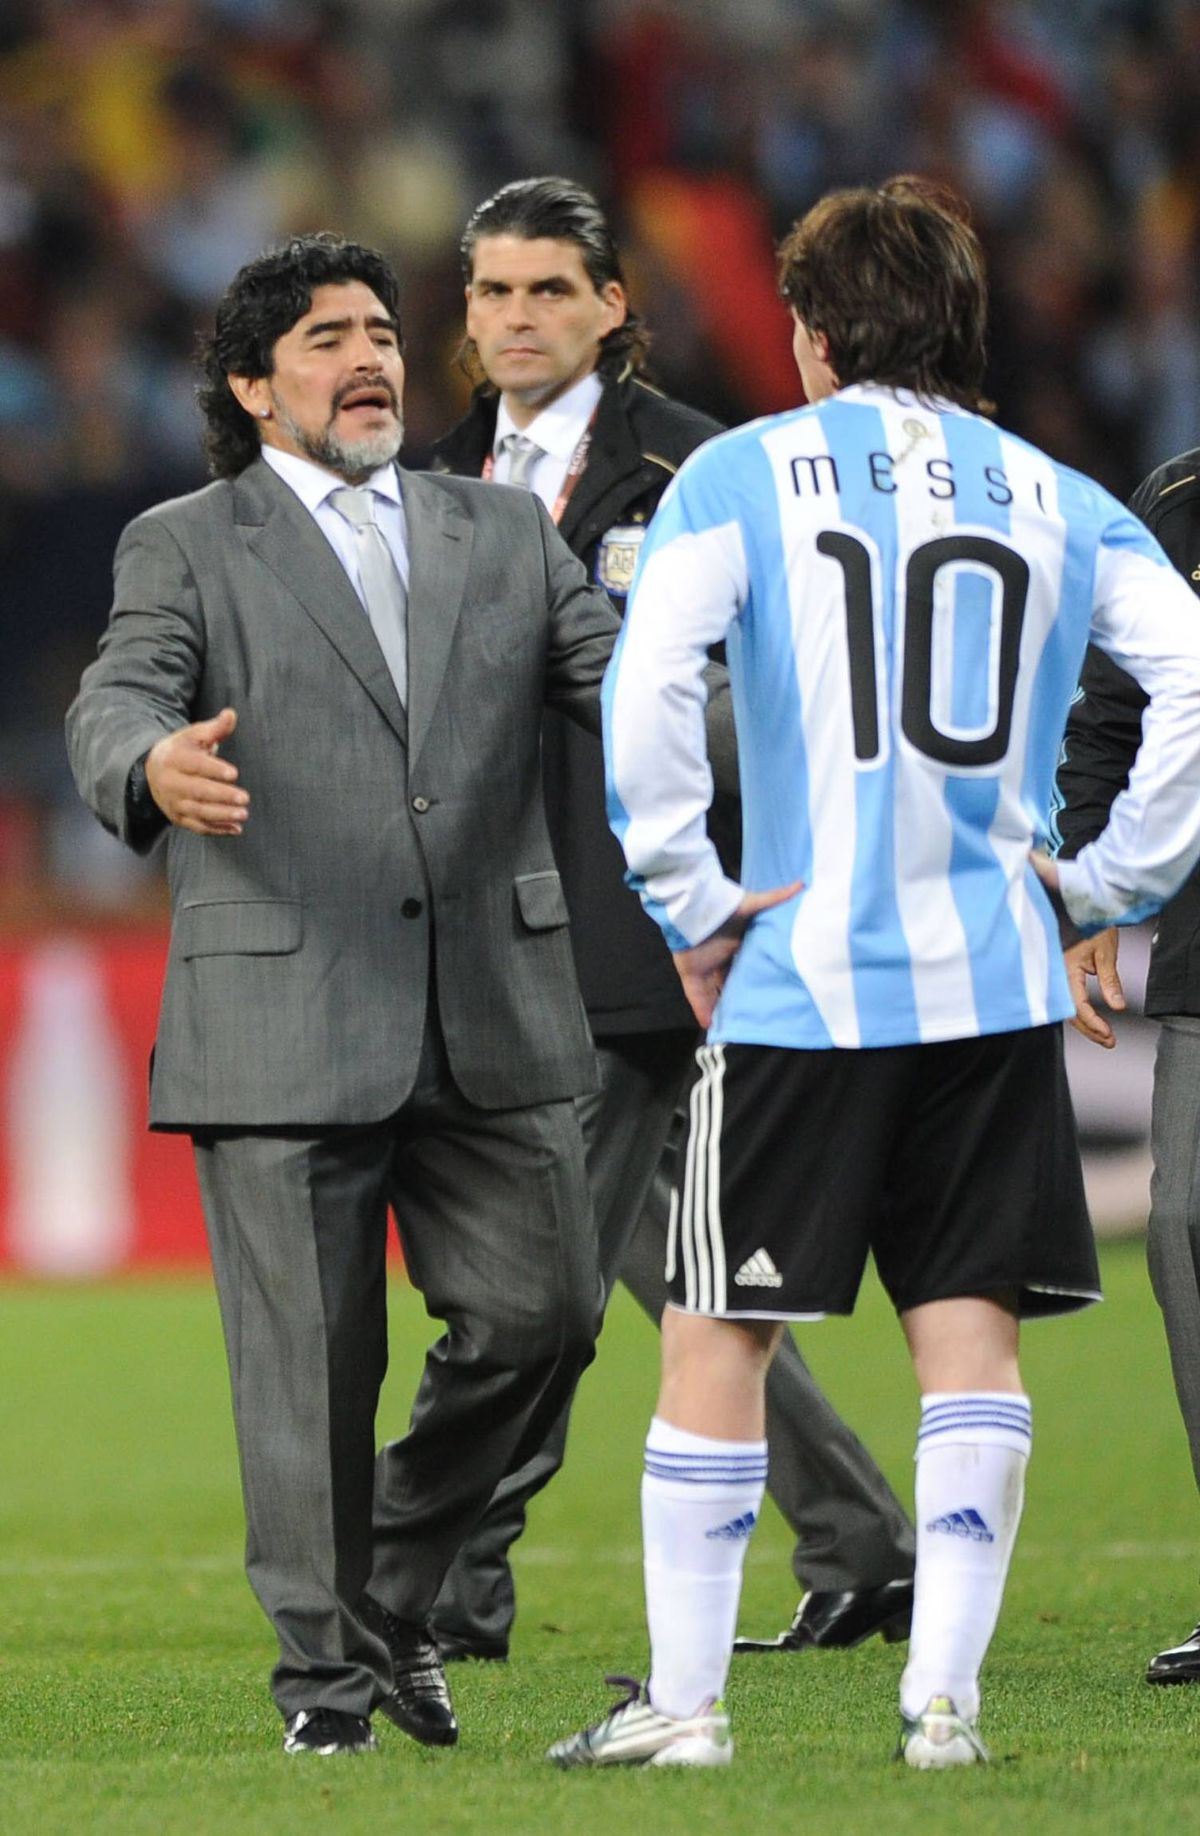 Cine a fost mai mare, Maradona sau Messi? » Insiderul care a lucrat și cu Diego, și cu Leo dă verdictul în interviul GSP: „El e un extraterestru”